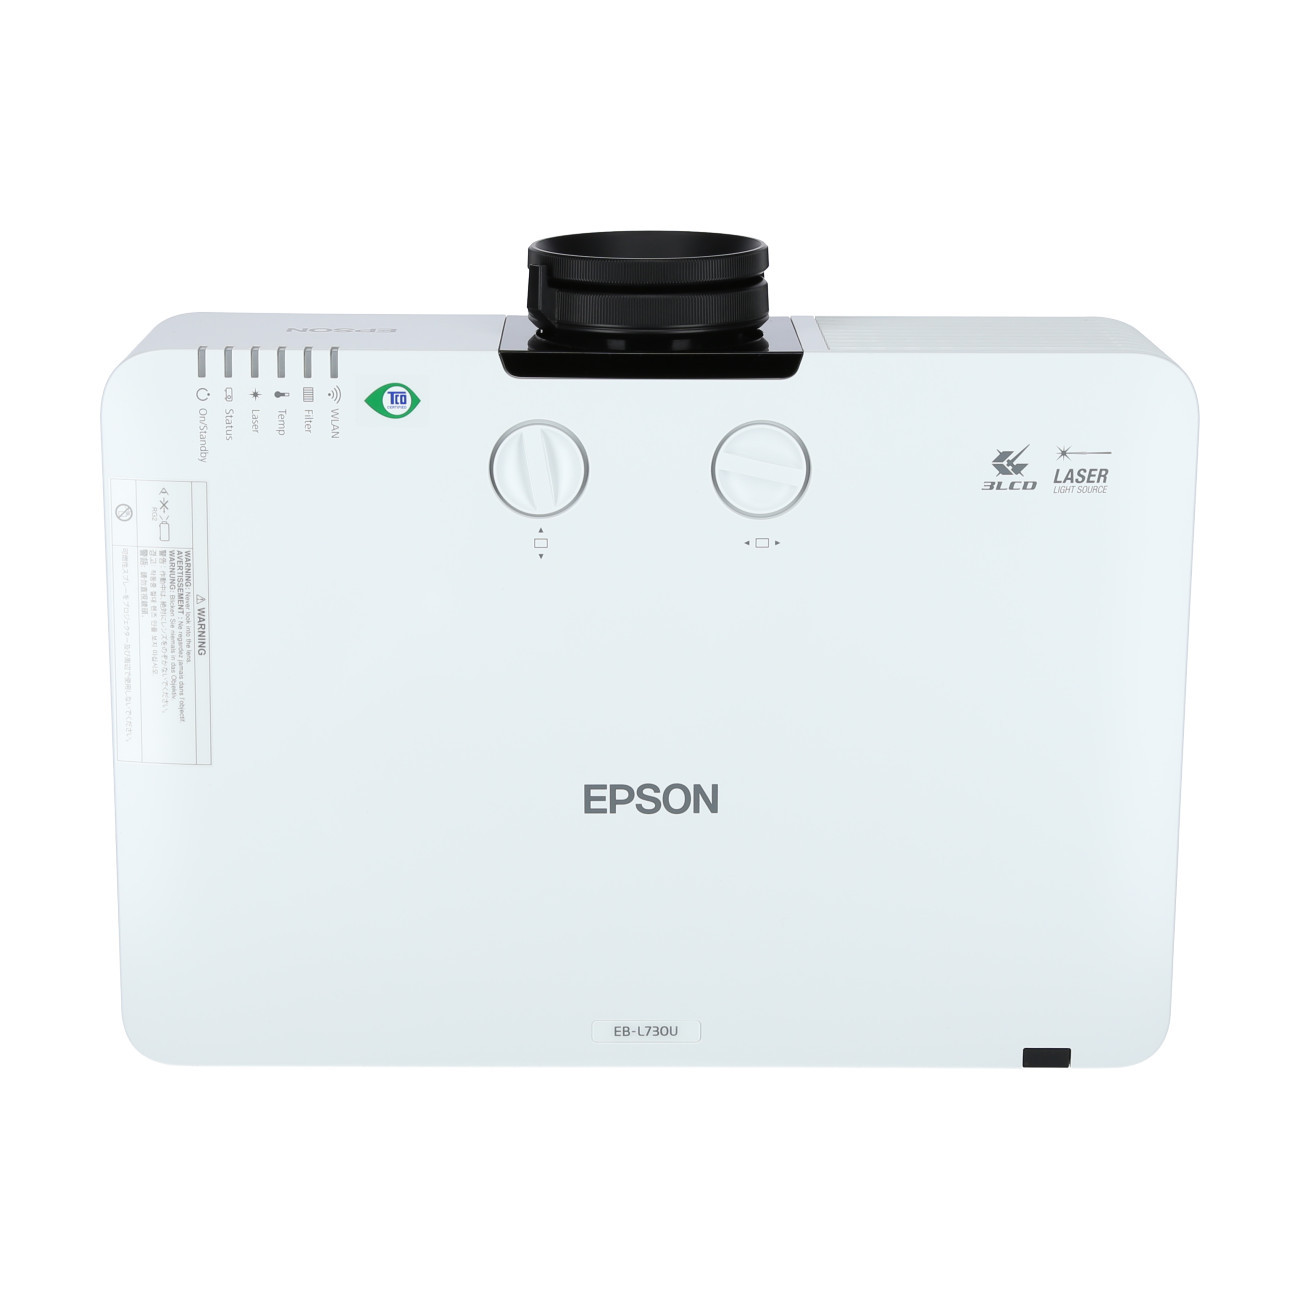 Vorschau: Epson EB-L730U weiß Laser-Beamer mit 7000 Lumen und WUXGA